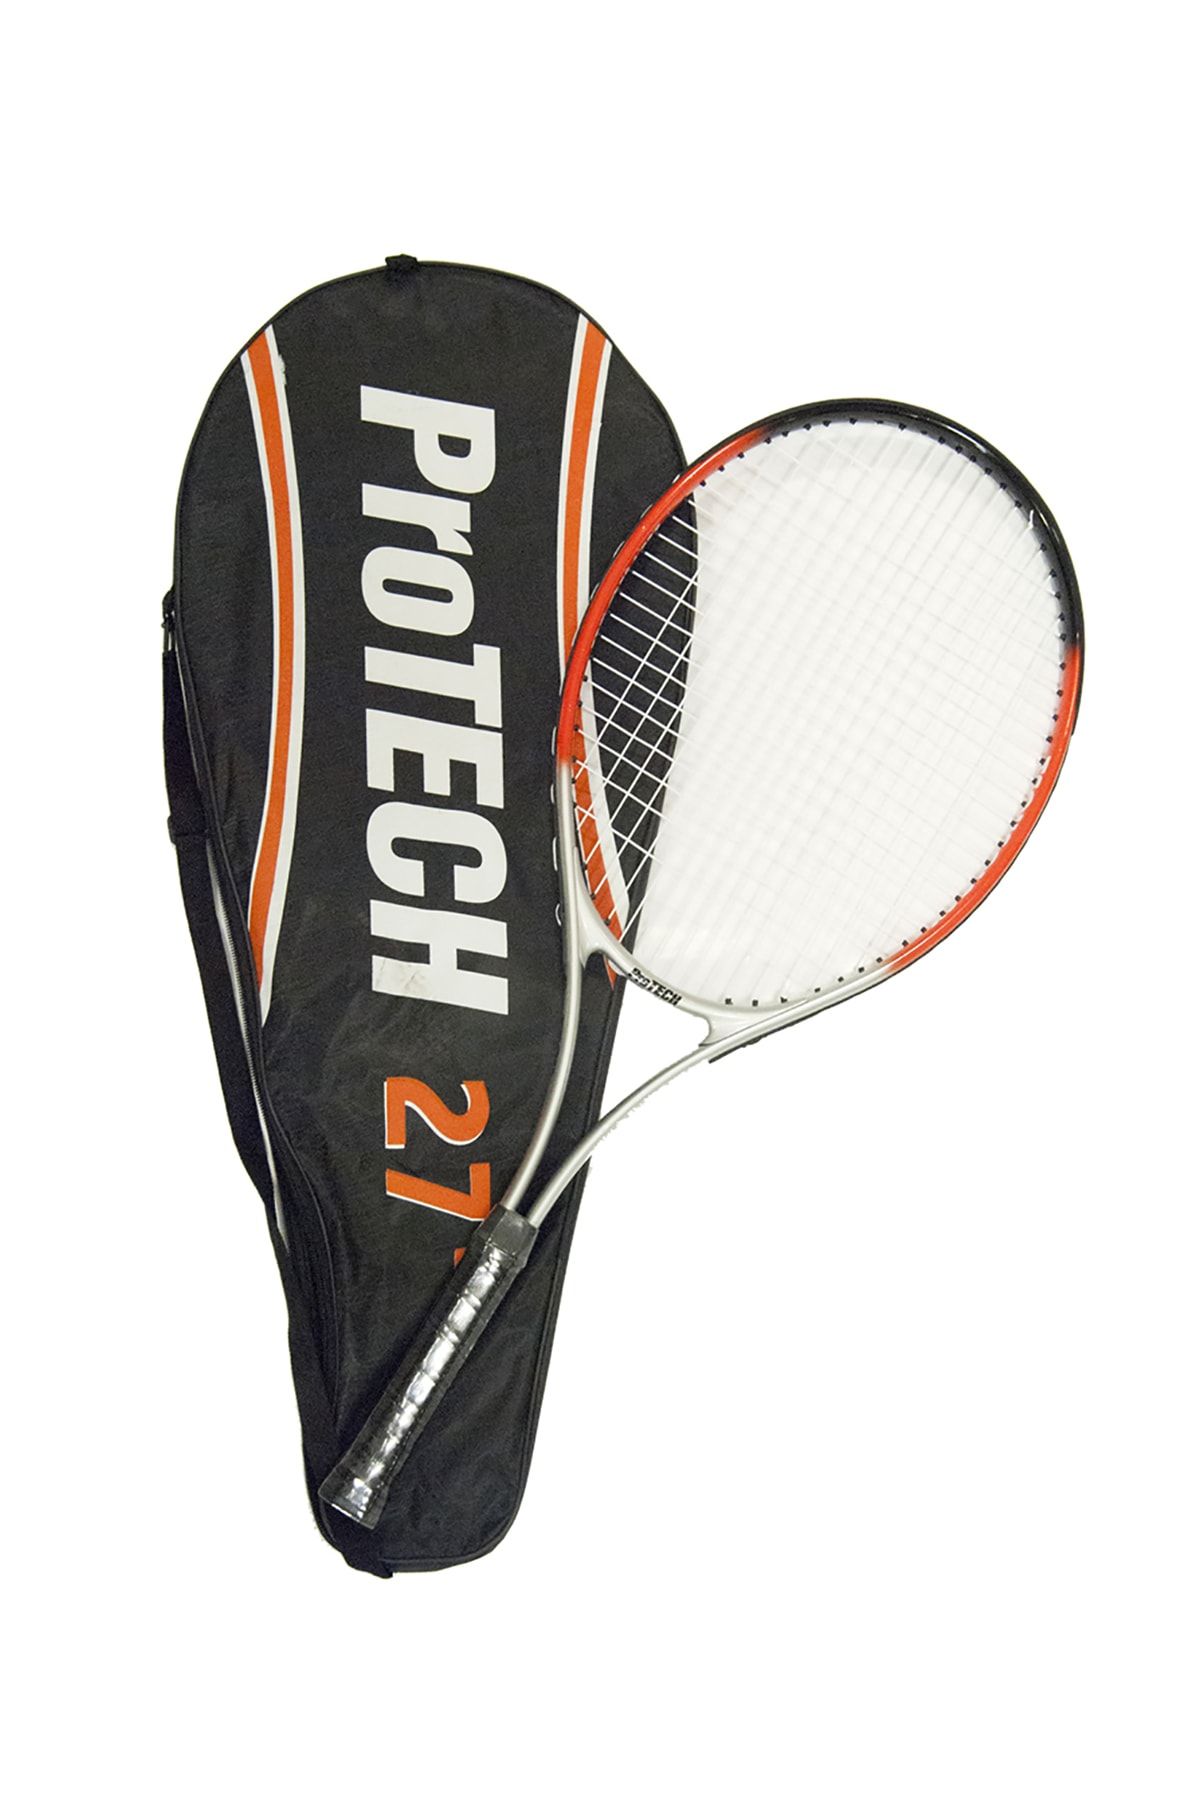 Protech M500 Tenis Raketi - 27